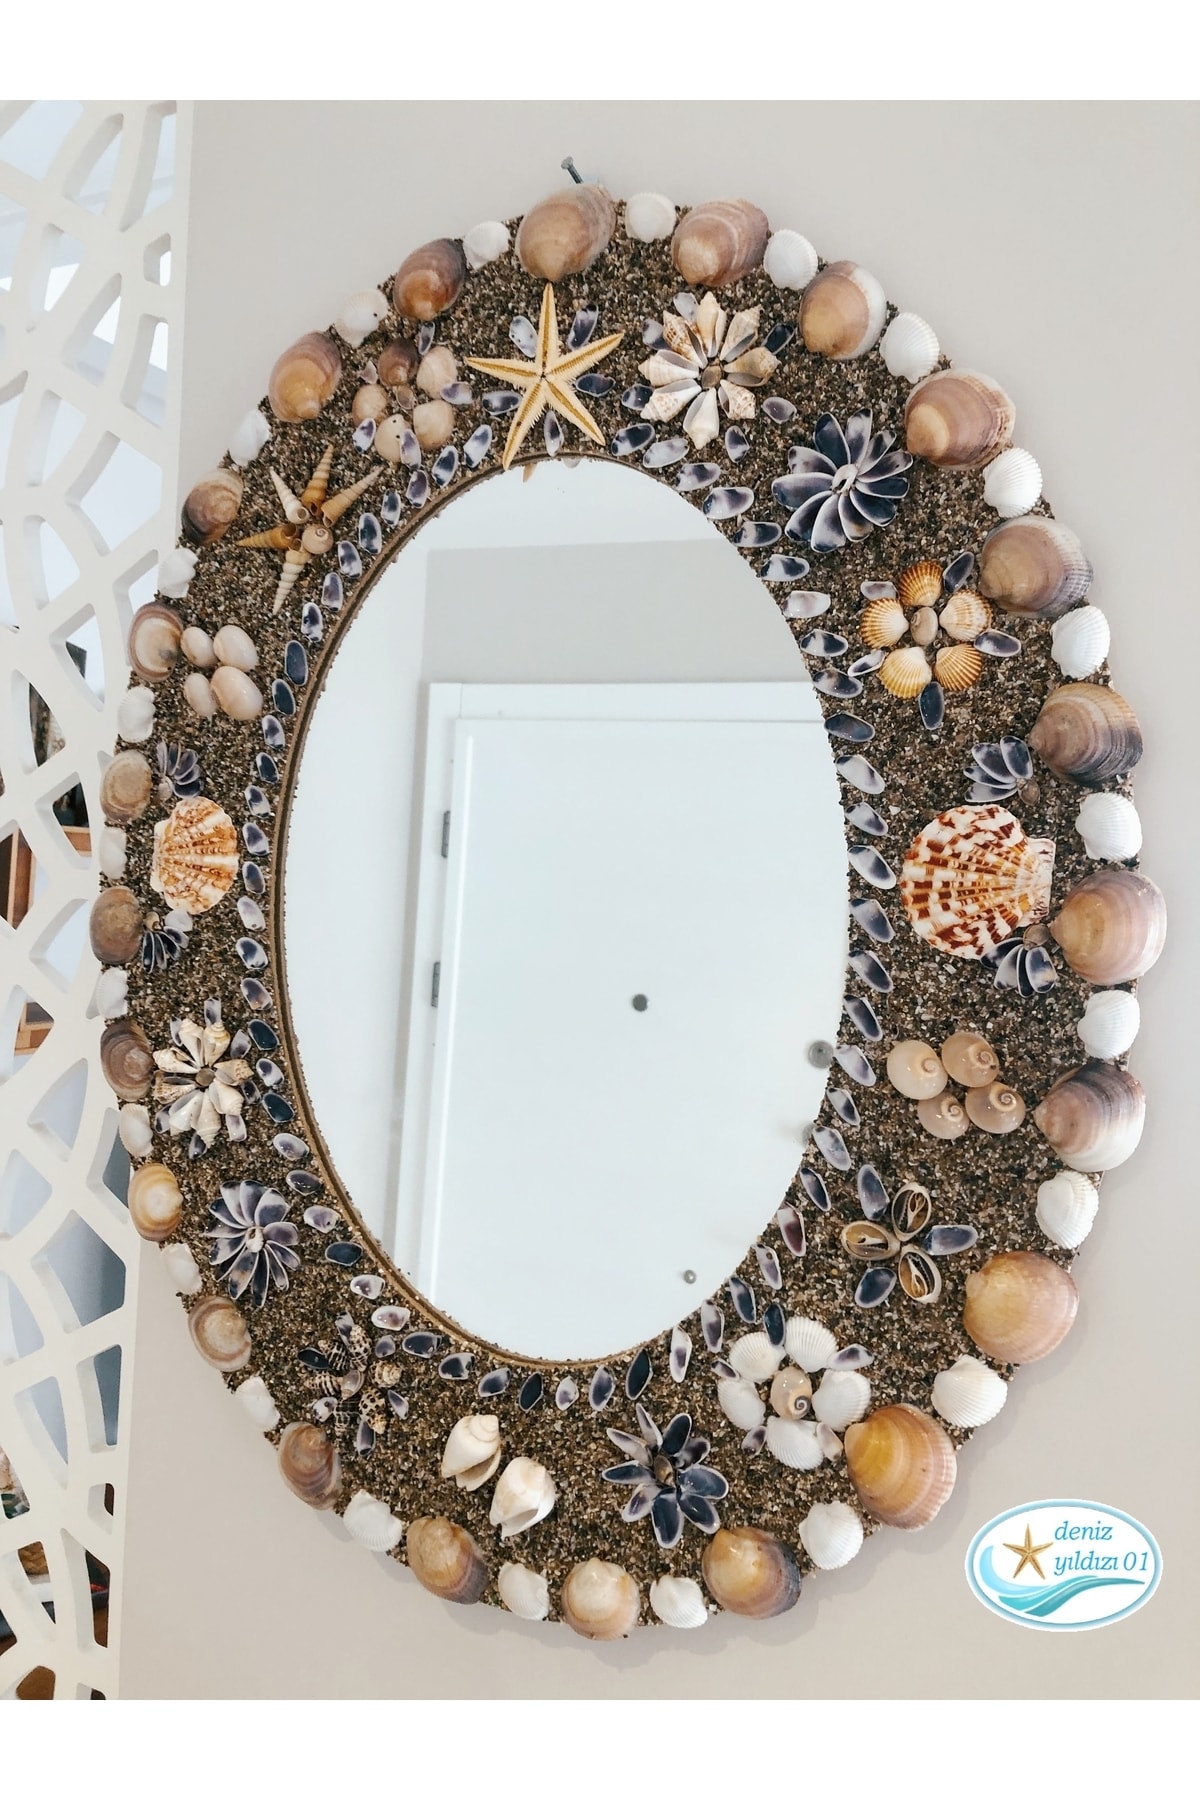 Deniz Yıldızım El Yapımı Oval Duvar Aynası doğal Deniz Kabuklarından Ev Dekorasyon Ürünleri